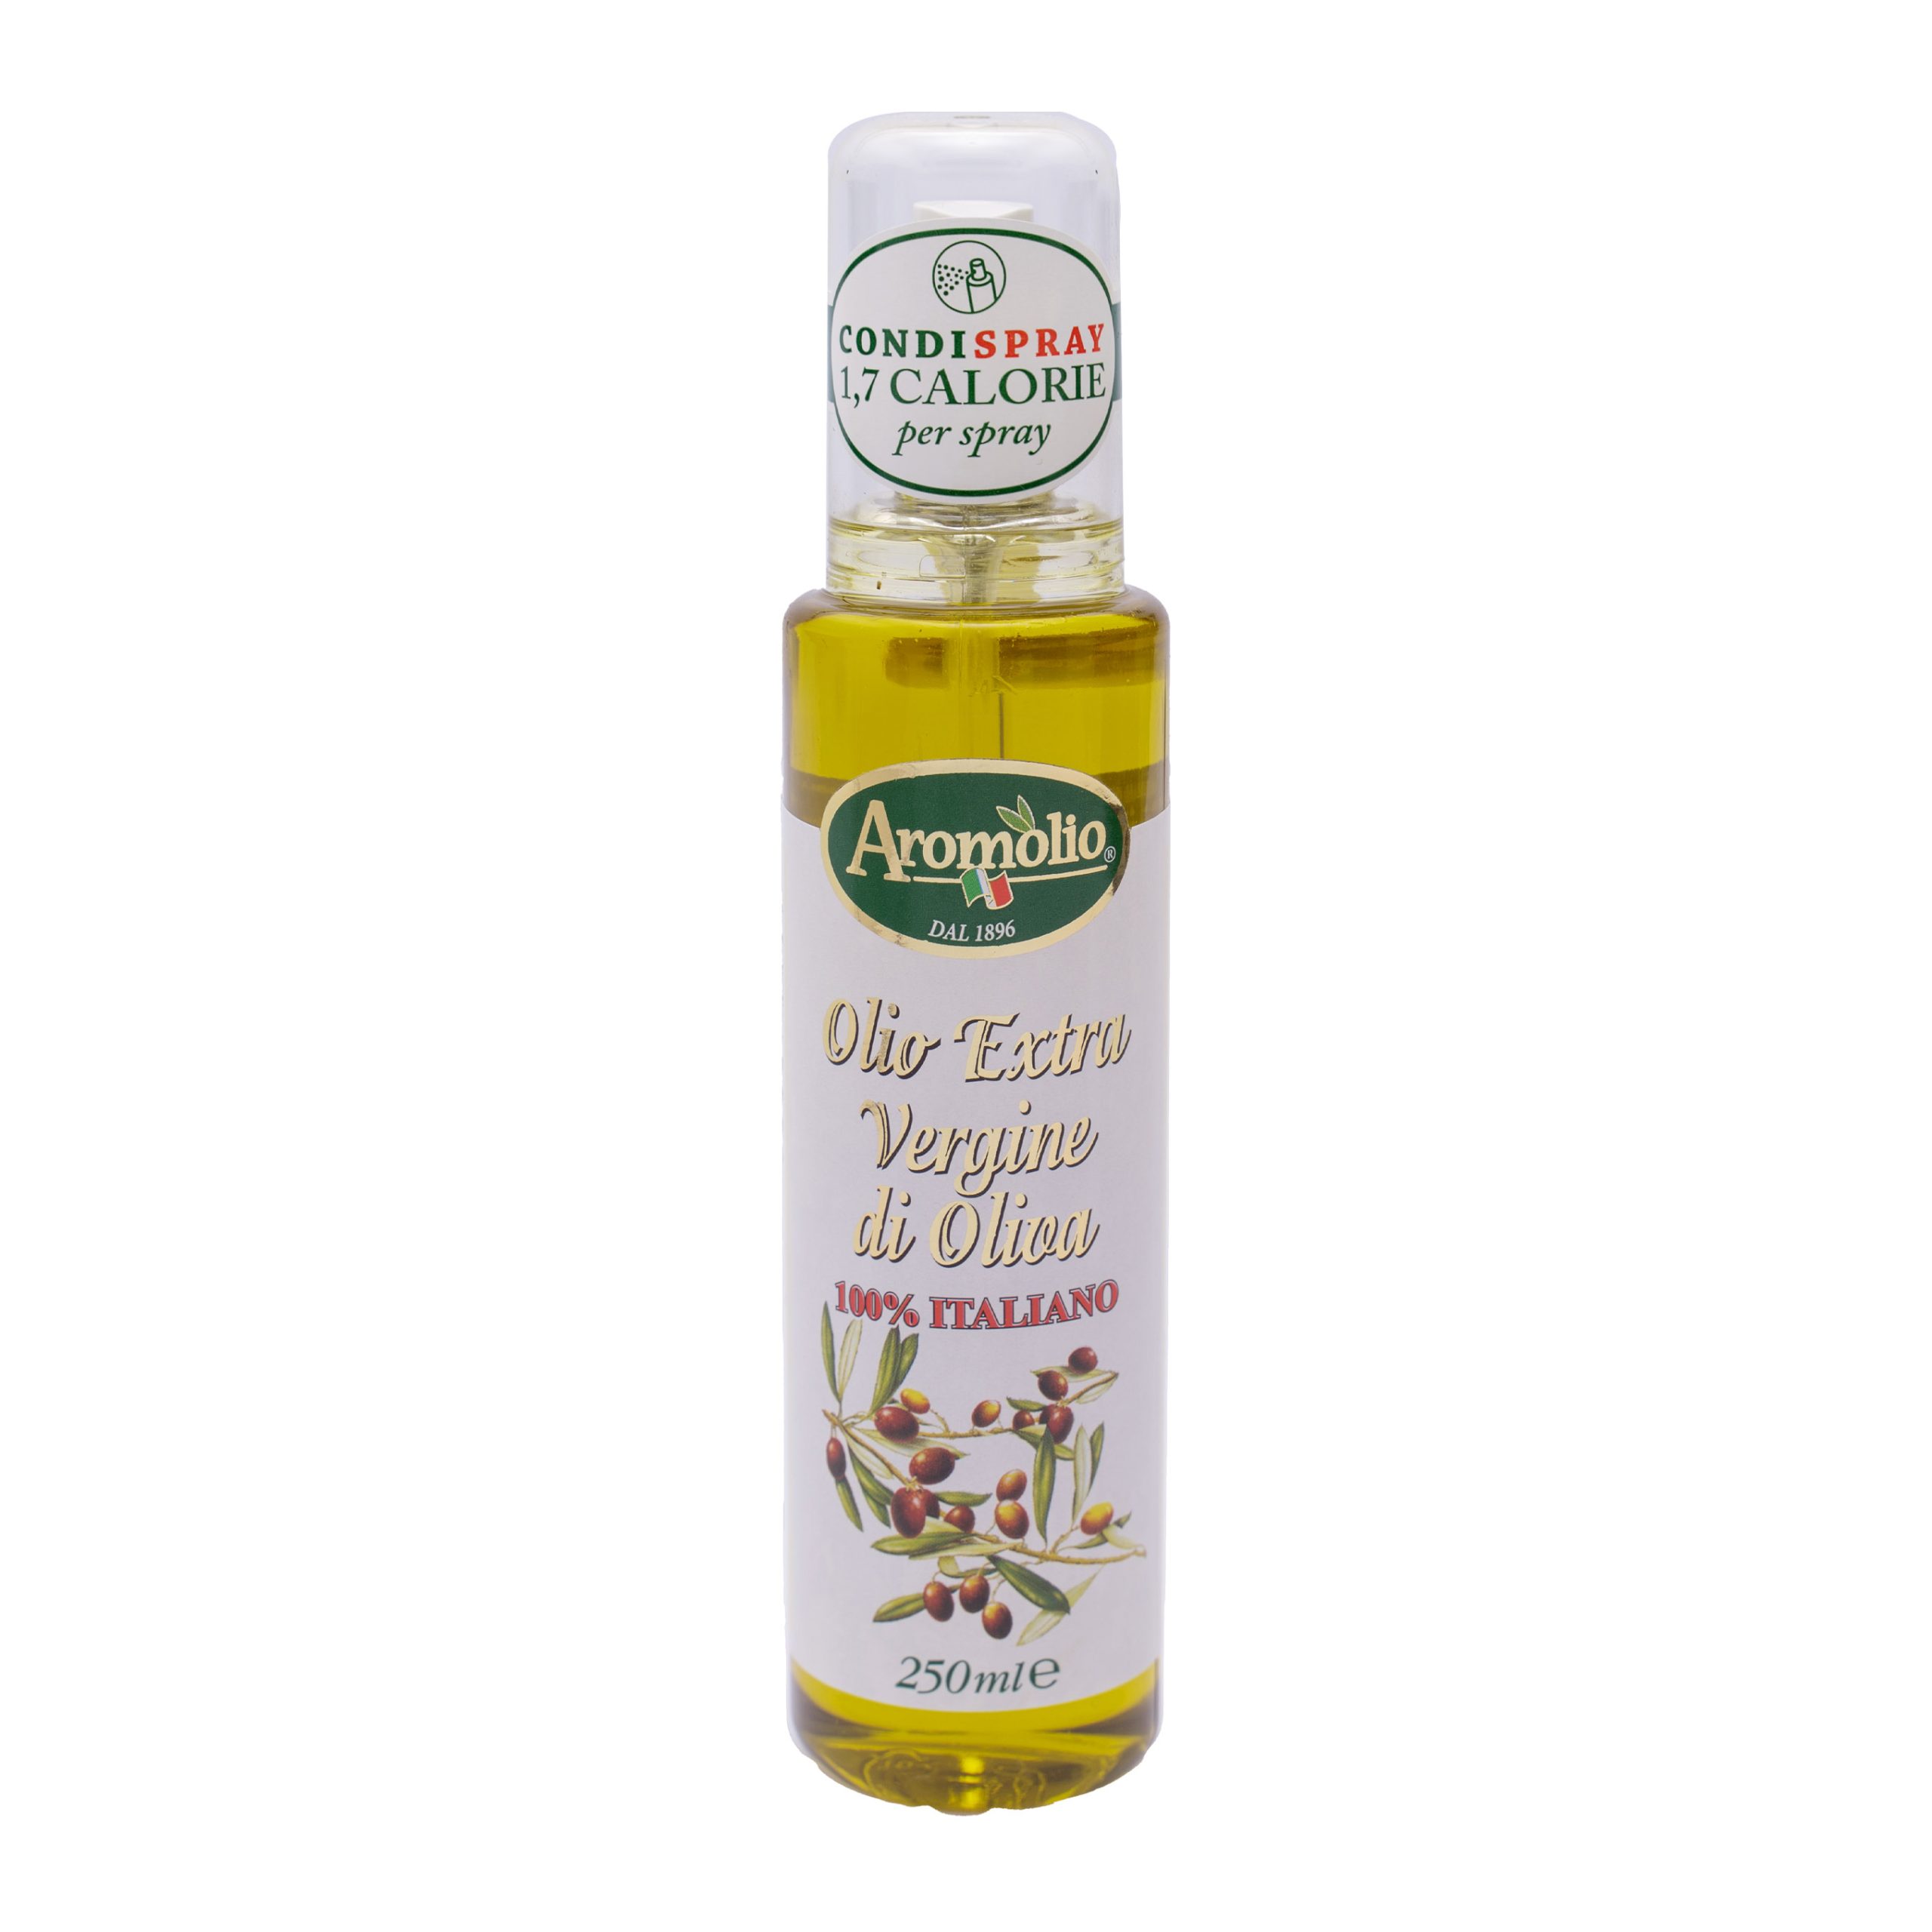 Olio Extravergine di oliva spray 100% italiano - Aromolio